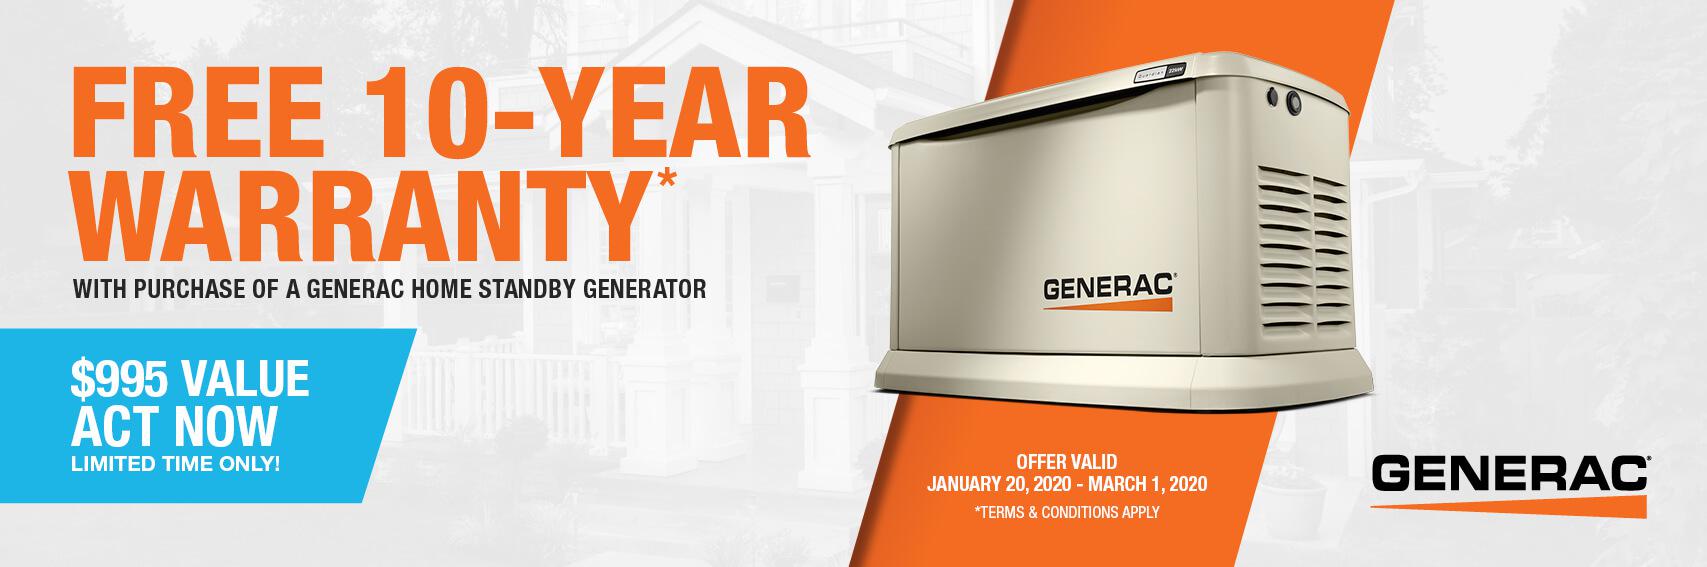 Homestandby Generator Deal | Warranty Offer | Generac Dealer | Wisconsin Rapids, WI